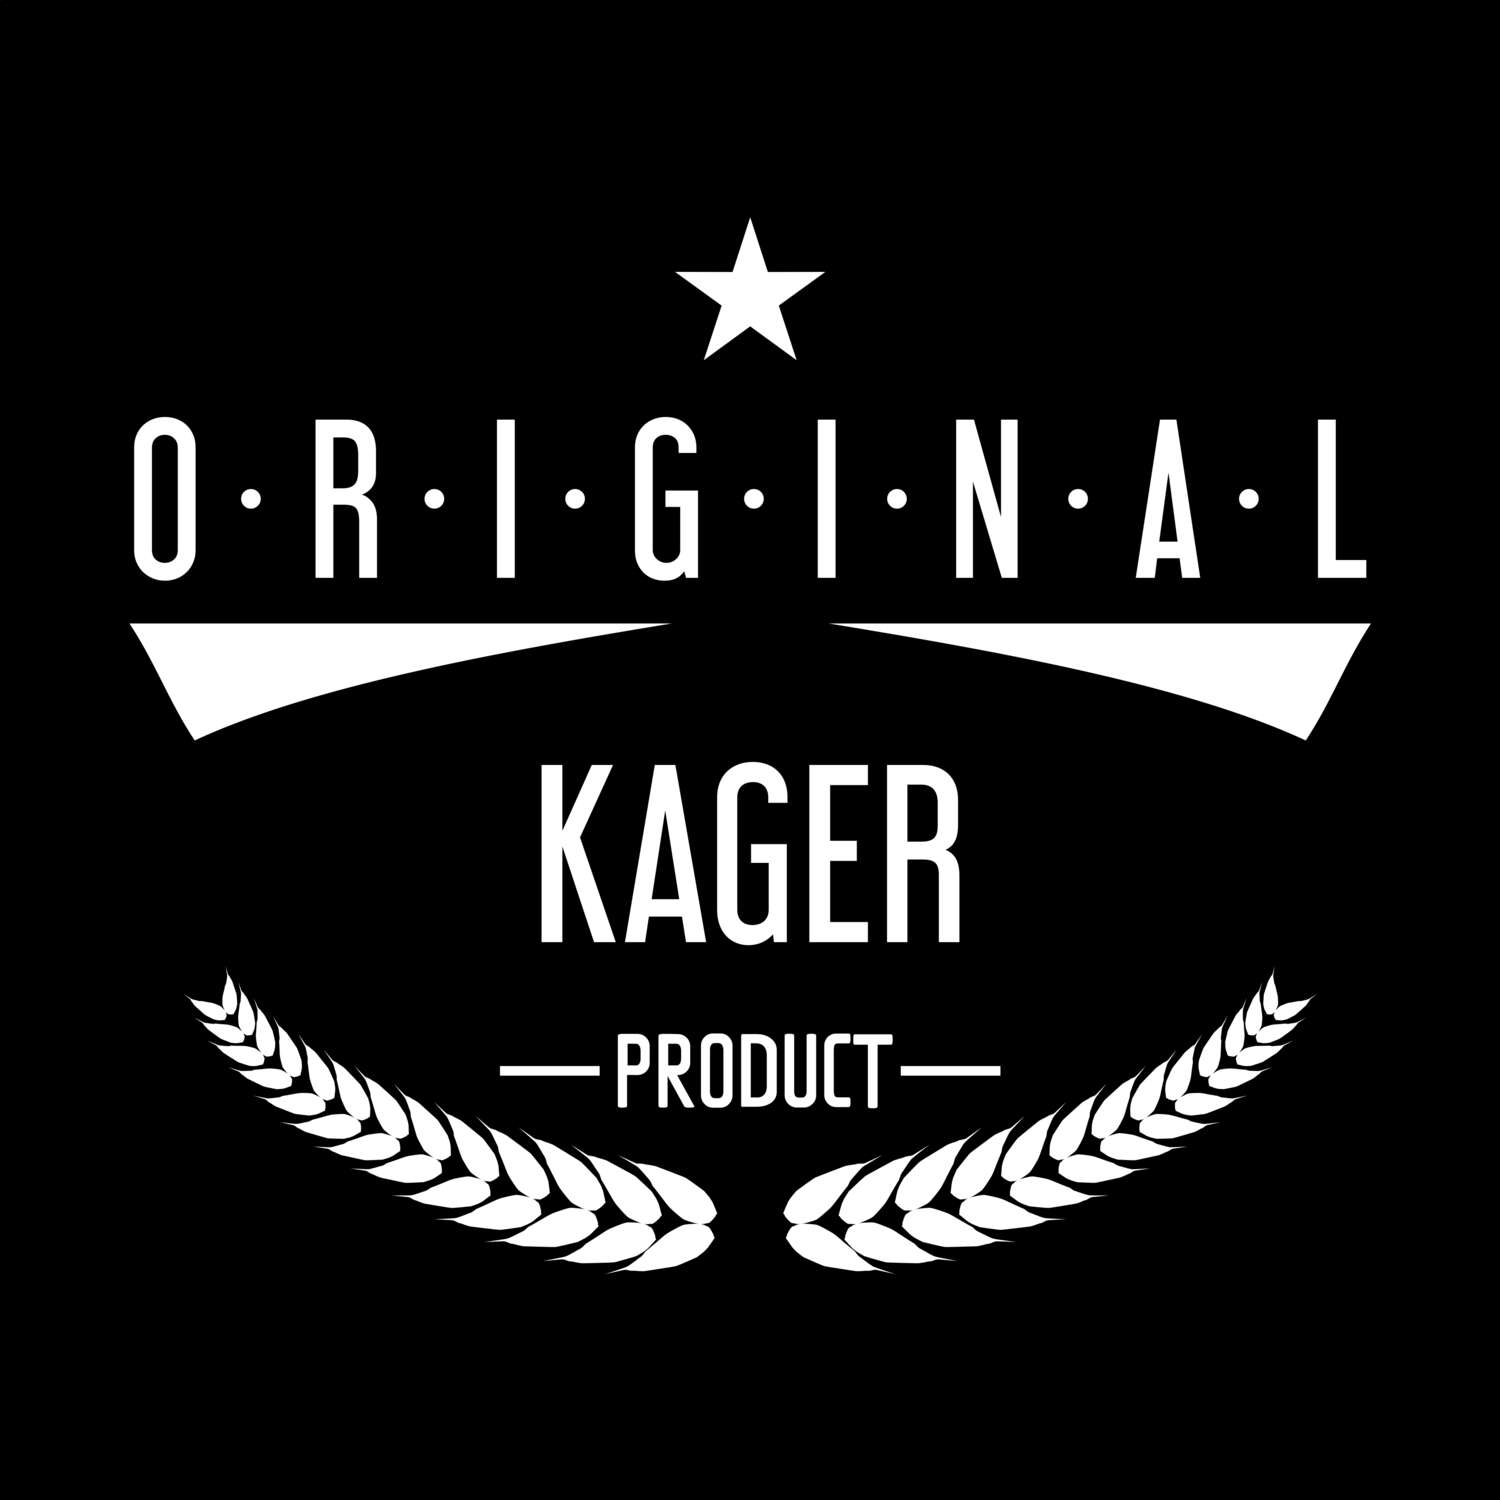 Kager T-Shirt »Original Product«